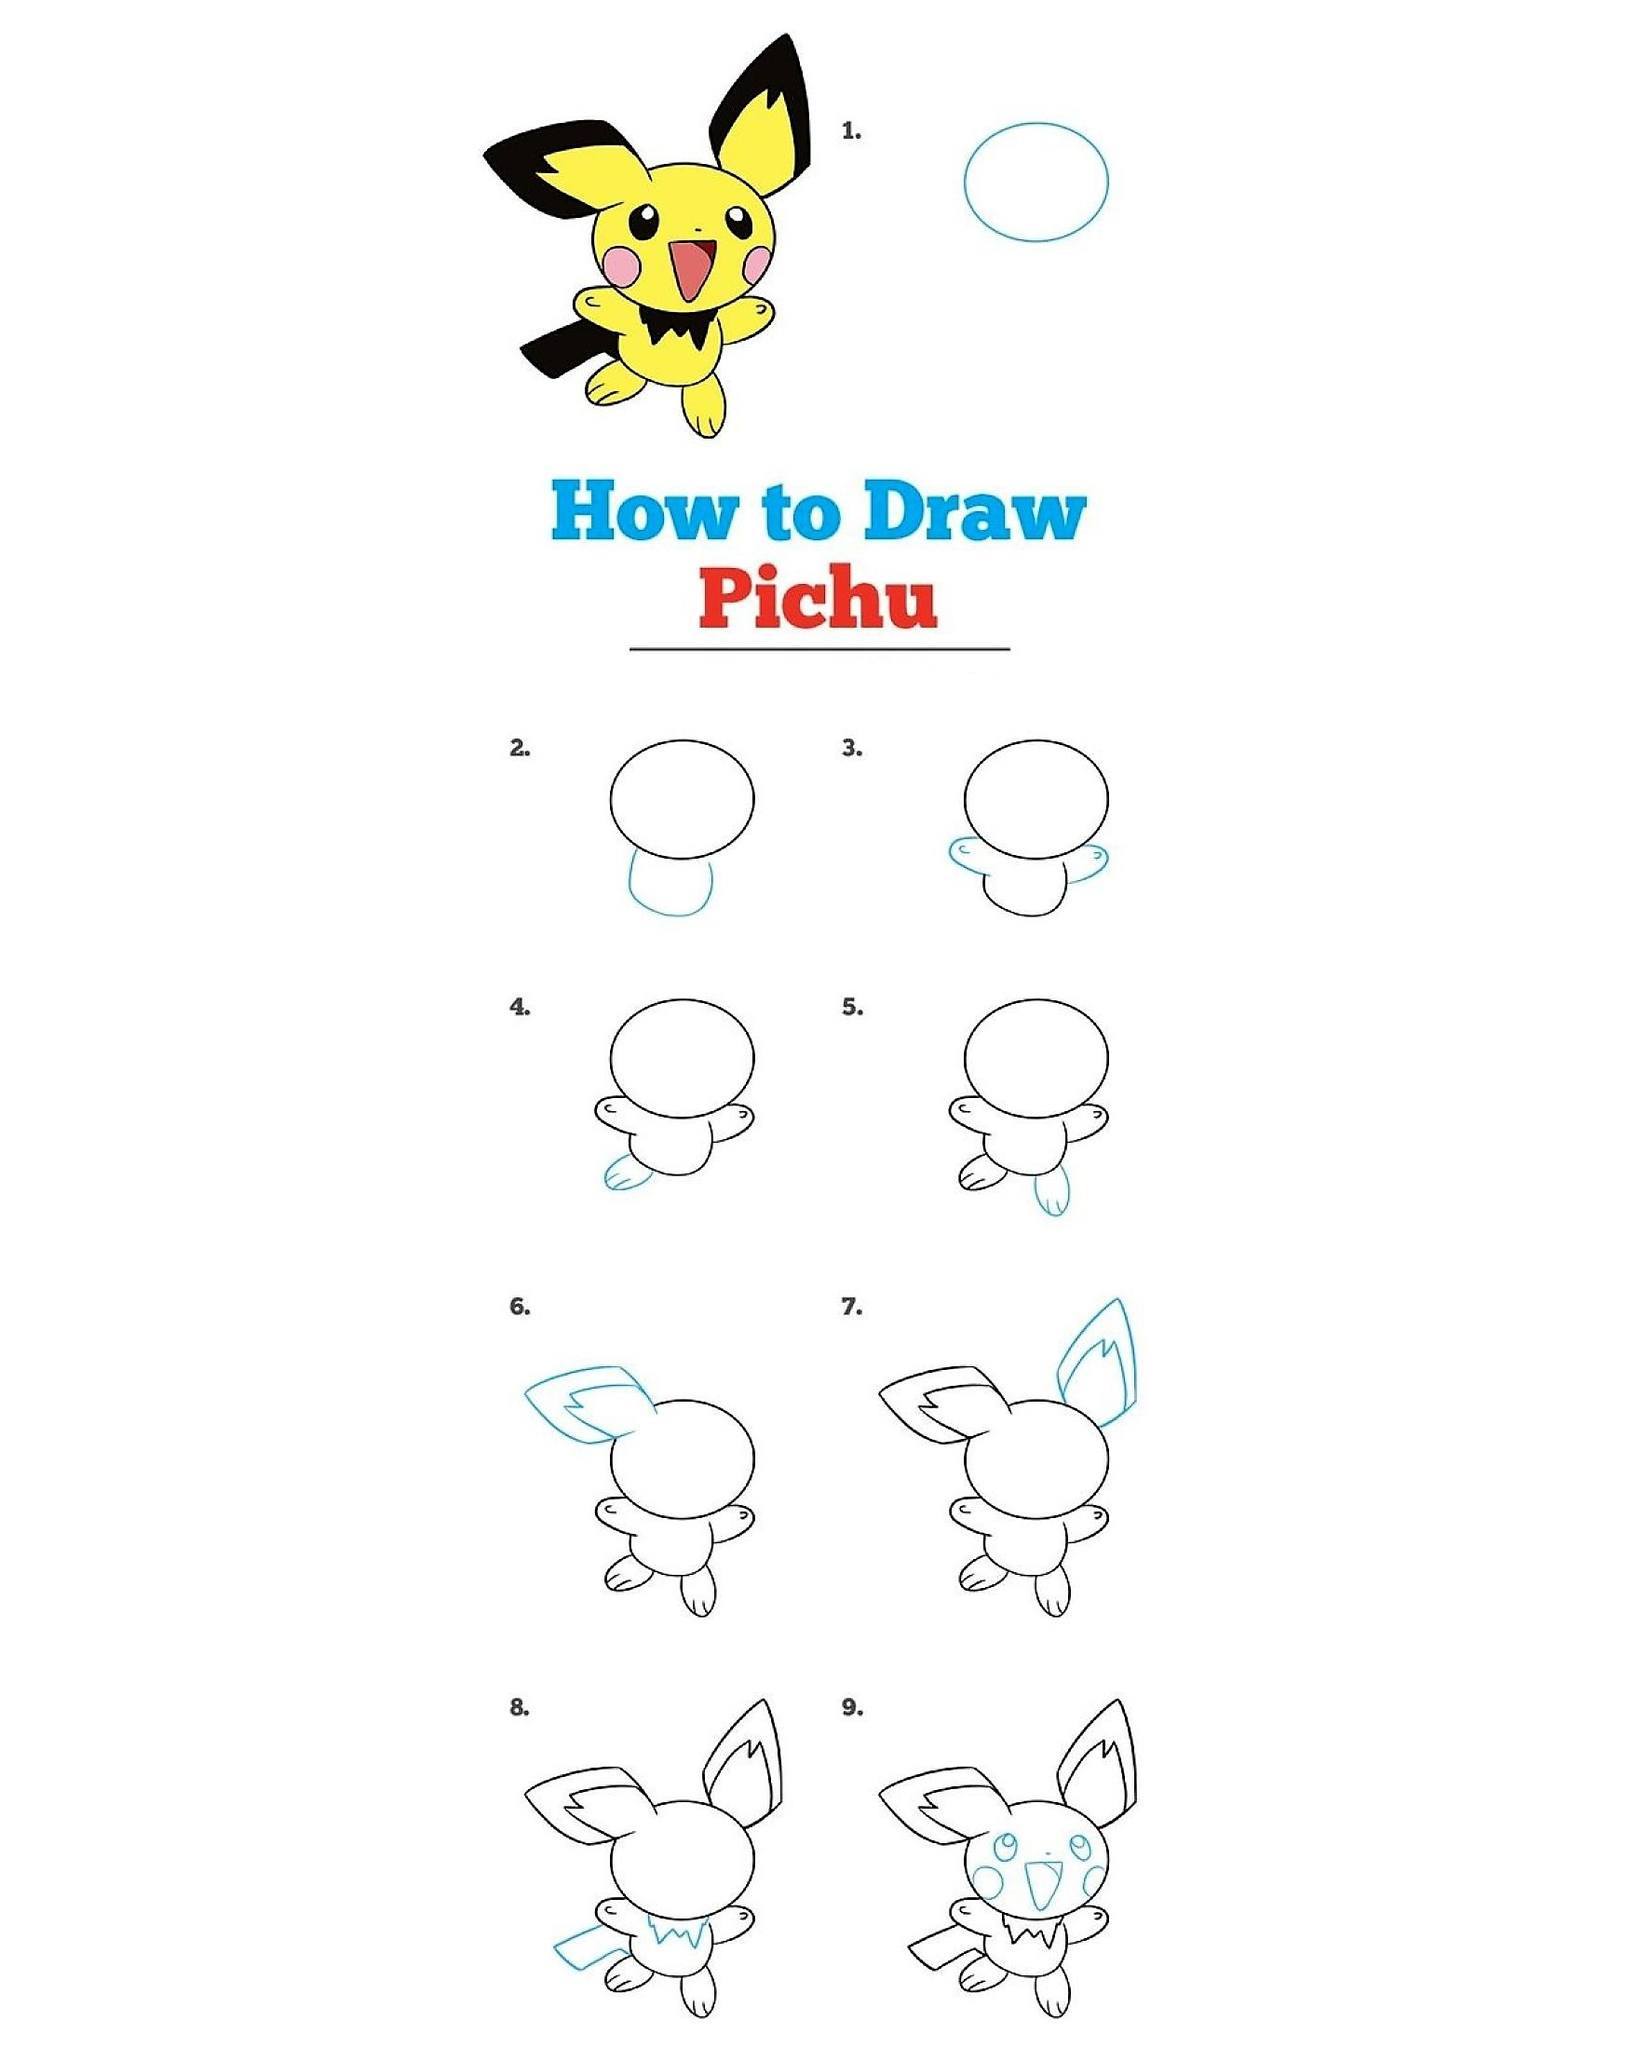 Vẽ Pikachu